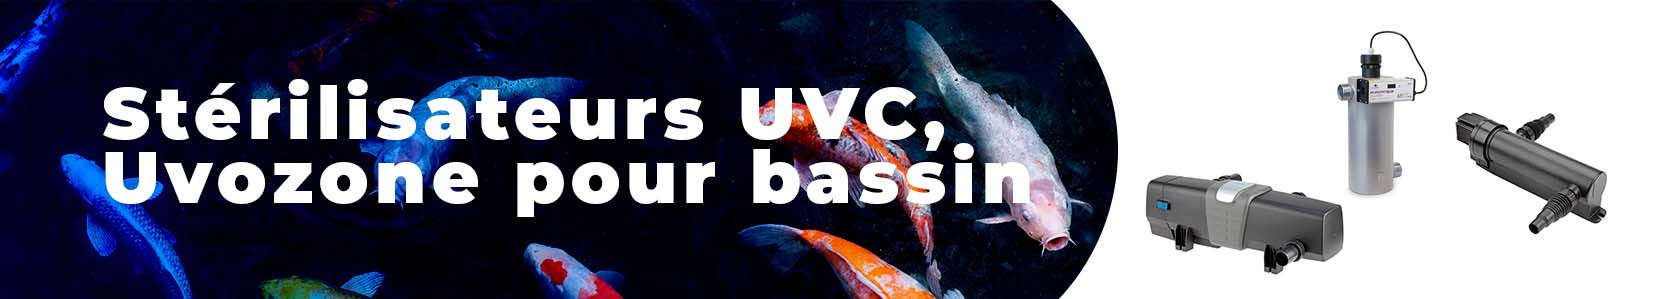 Stérilisateur UV pour bassin et Uvozone pour jardin aquatique